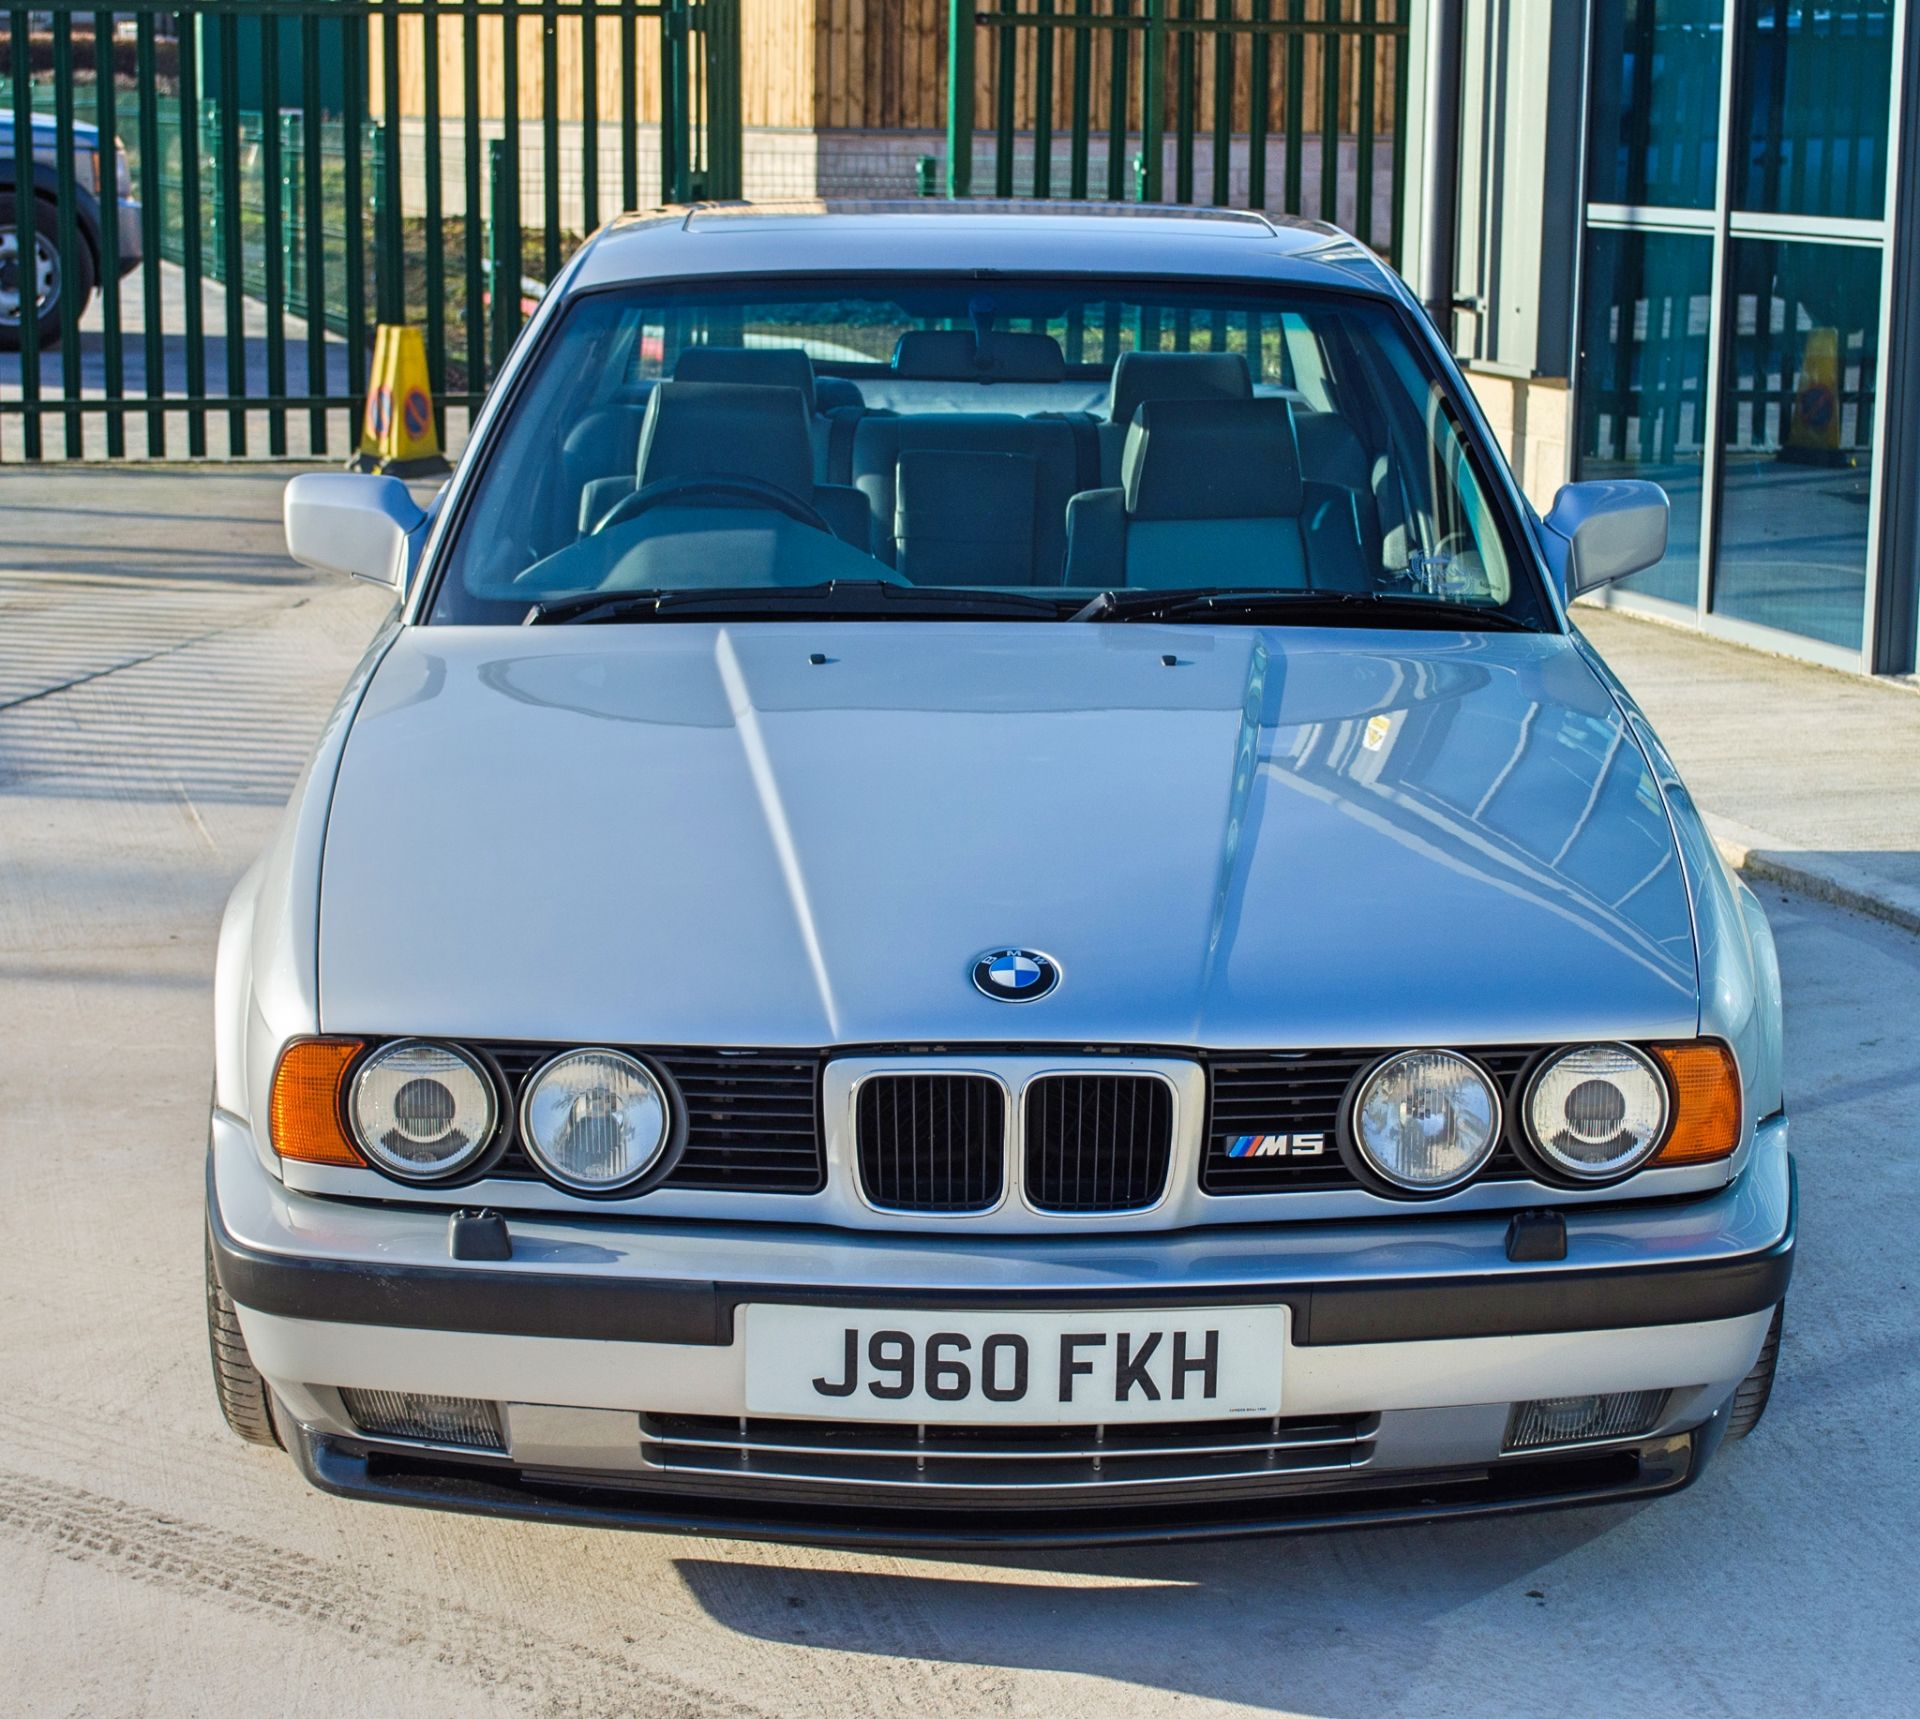 1991 BMW M5 E34 3.6 litre 4 door saloon - Image 11 of 59